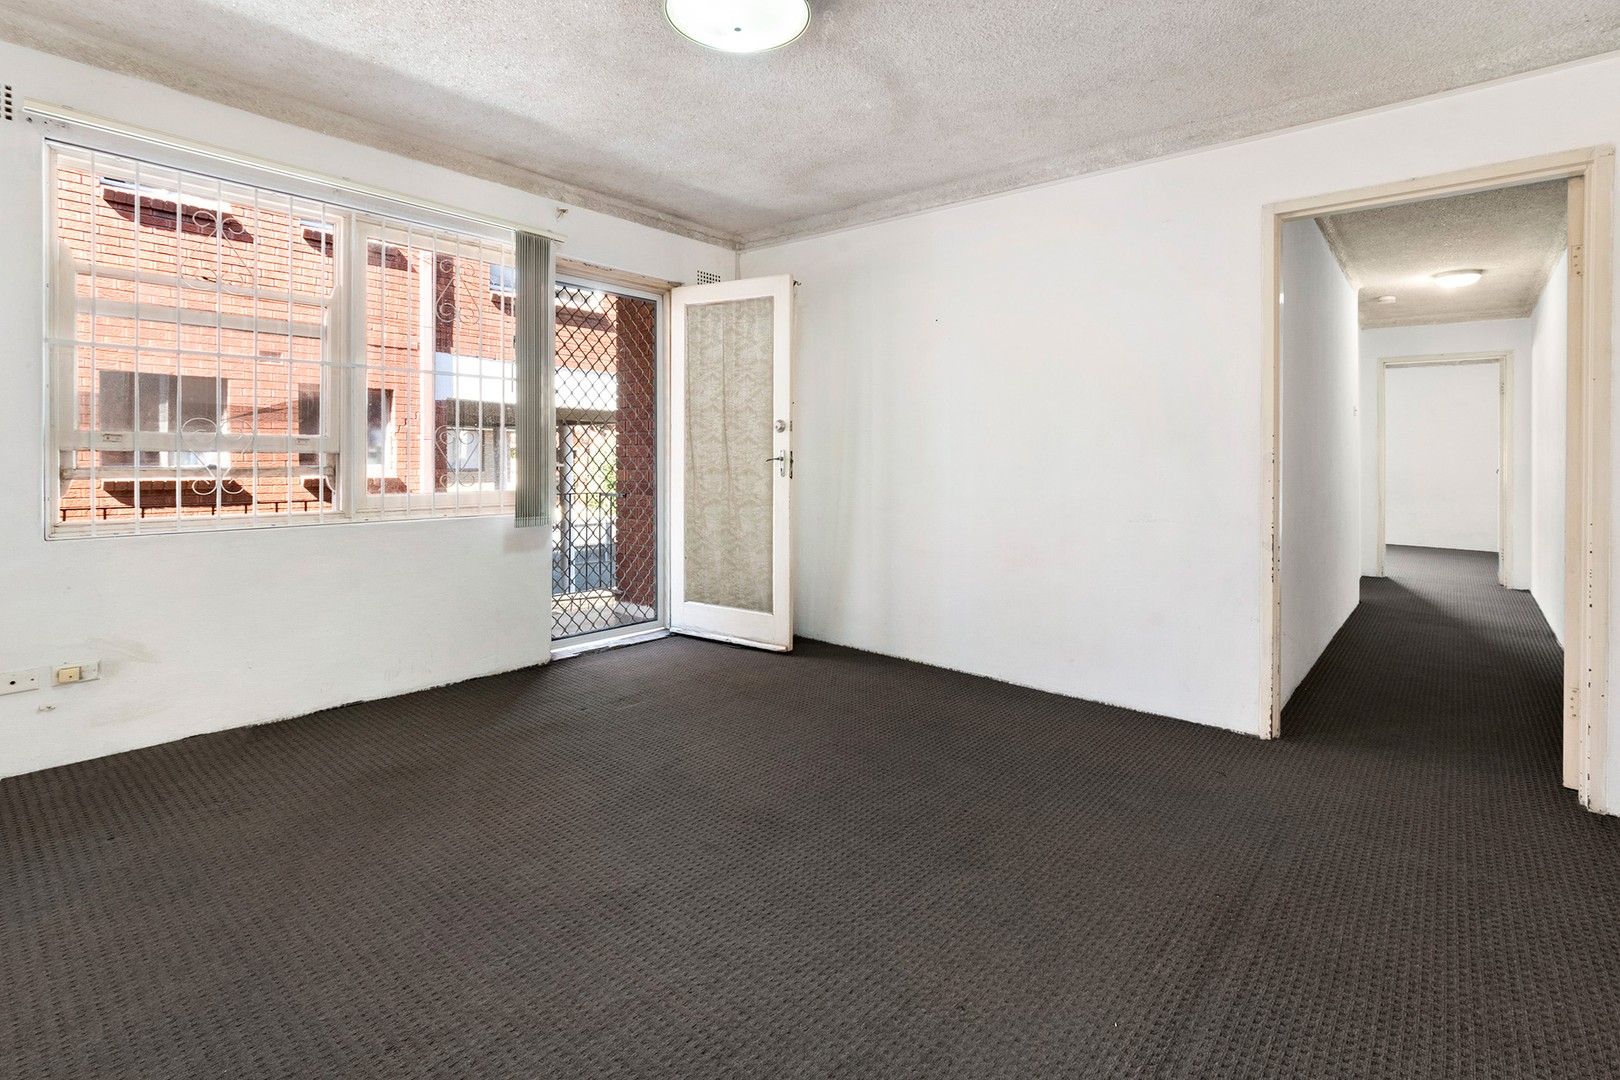 2 bedrooms Apartment / Unit / Flat in 3/10 Allen Street HARRIS PARK NSW, 2150